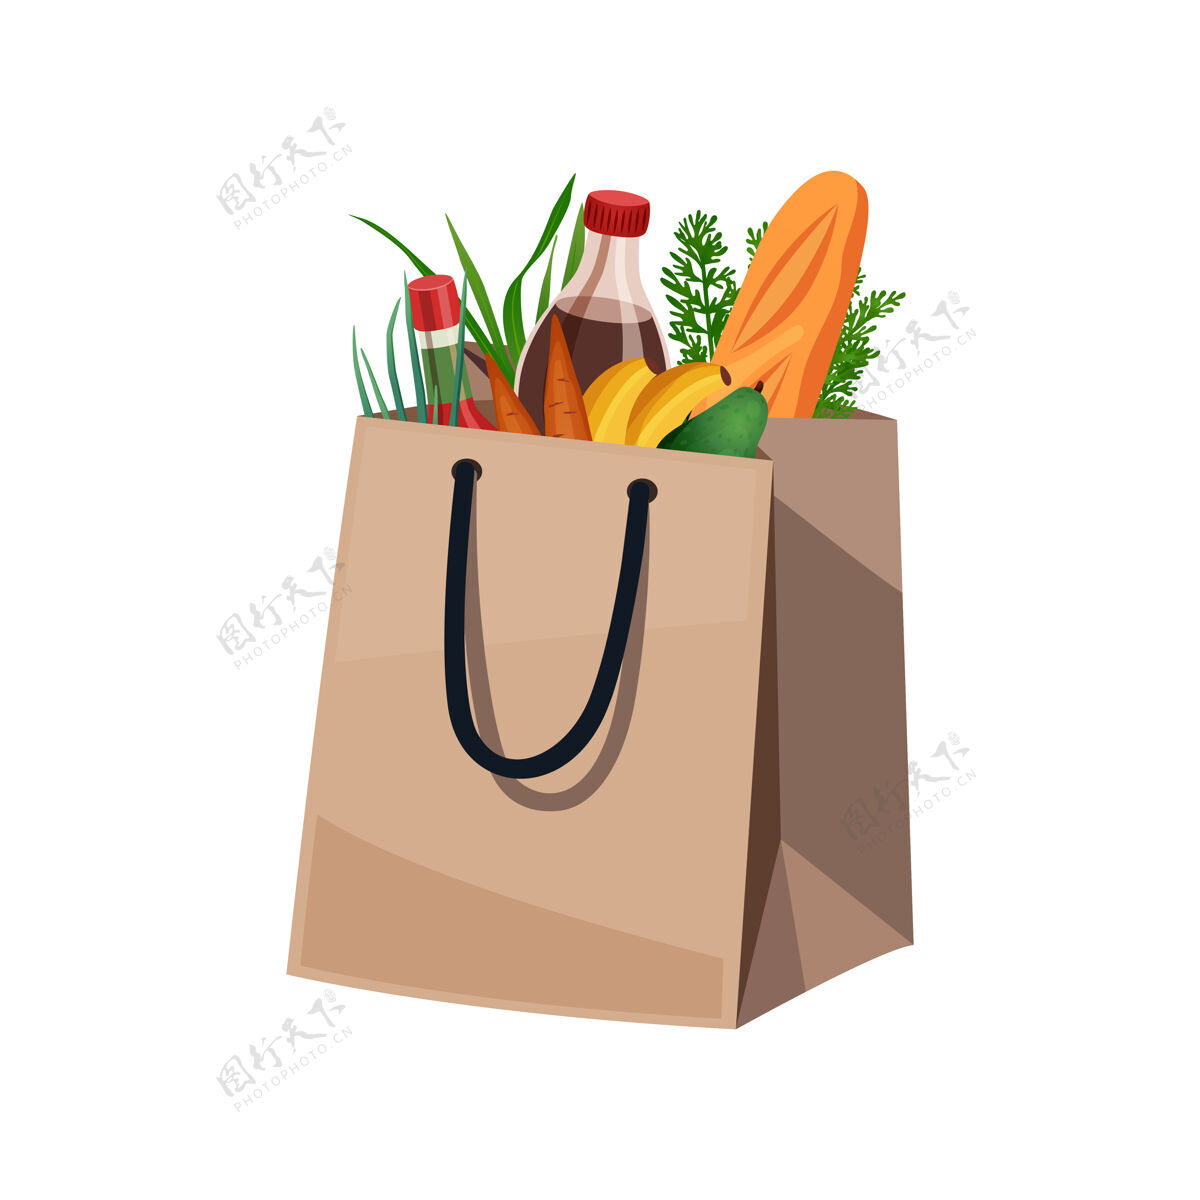 食品购物袋篮子组成的孤立形象的食品在纸袋水果包装购物